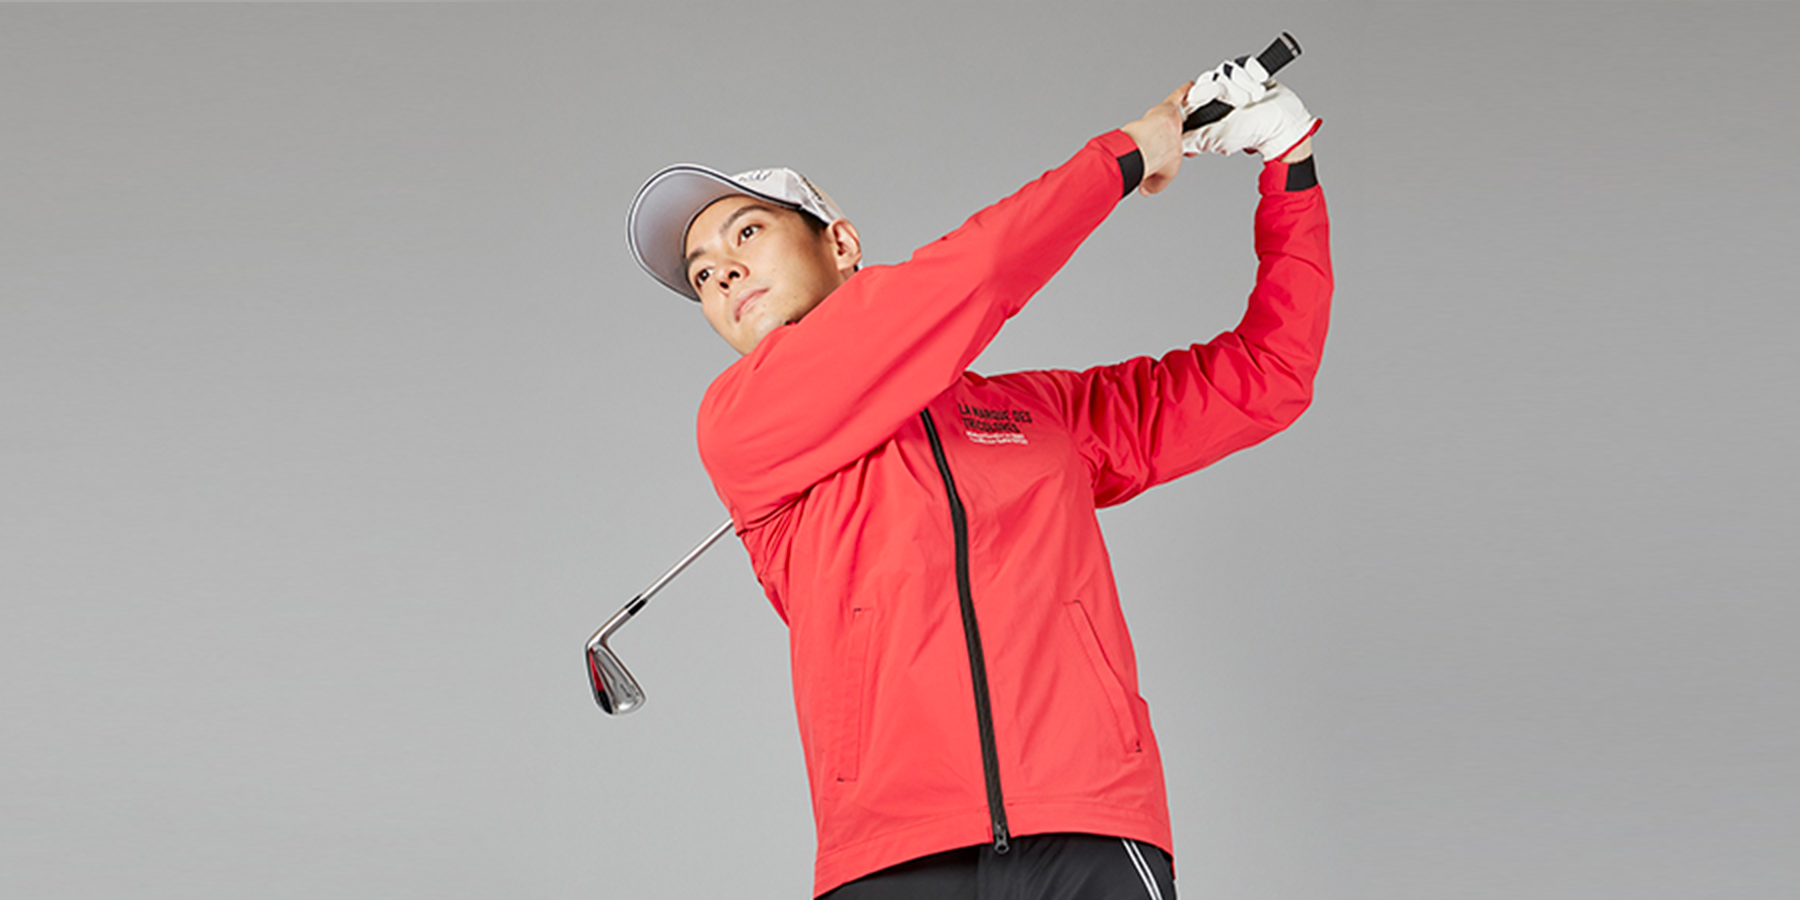 プロゴルファーの意見を商品開発に反映 ゴルファーの快適にこだわった Pro Golfer S Series